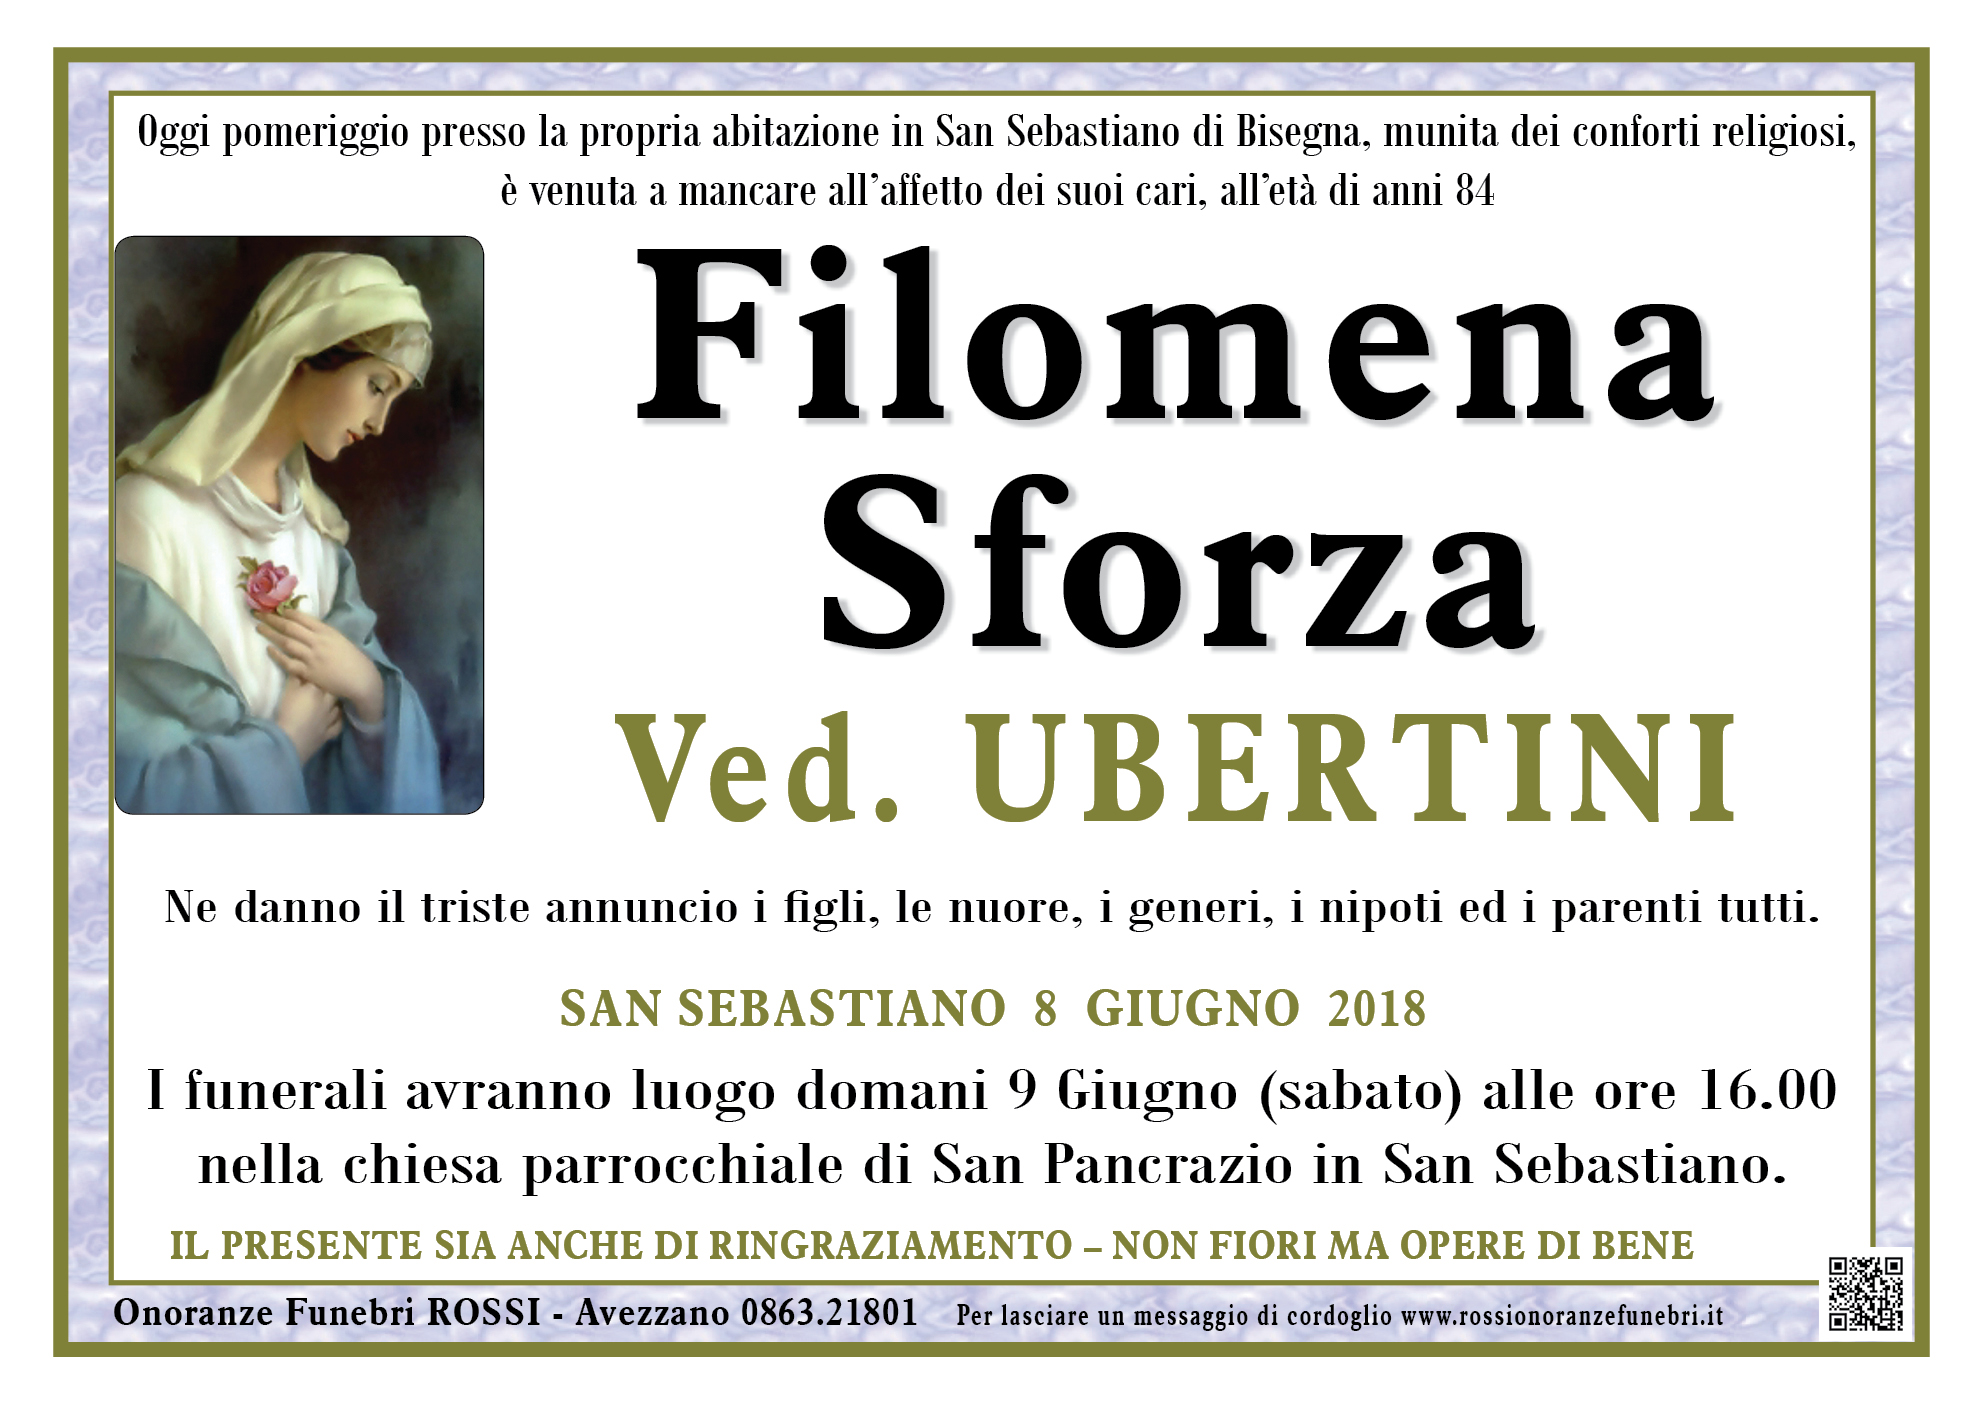 Filomena Concetta Sforza